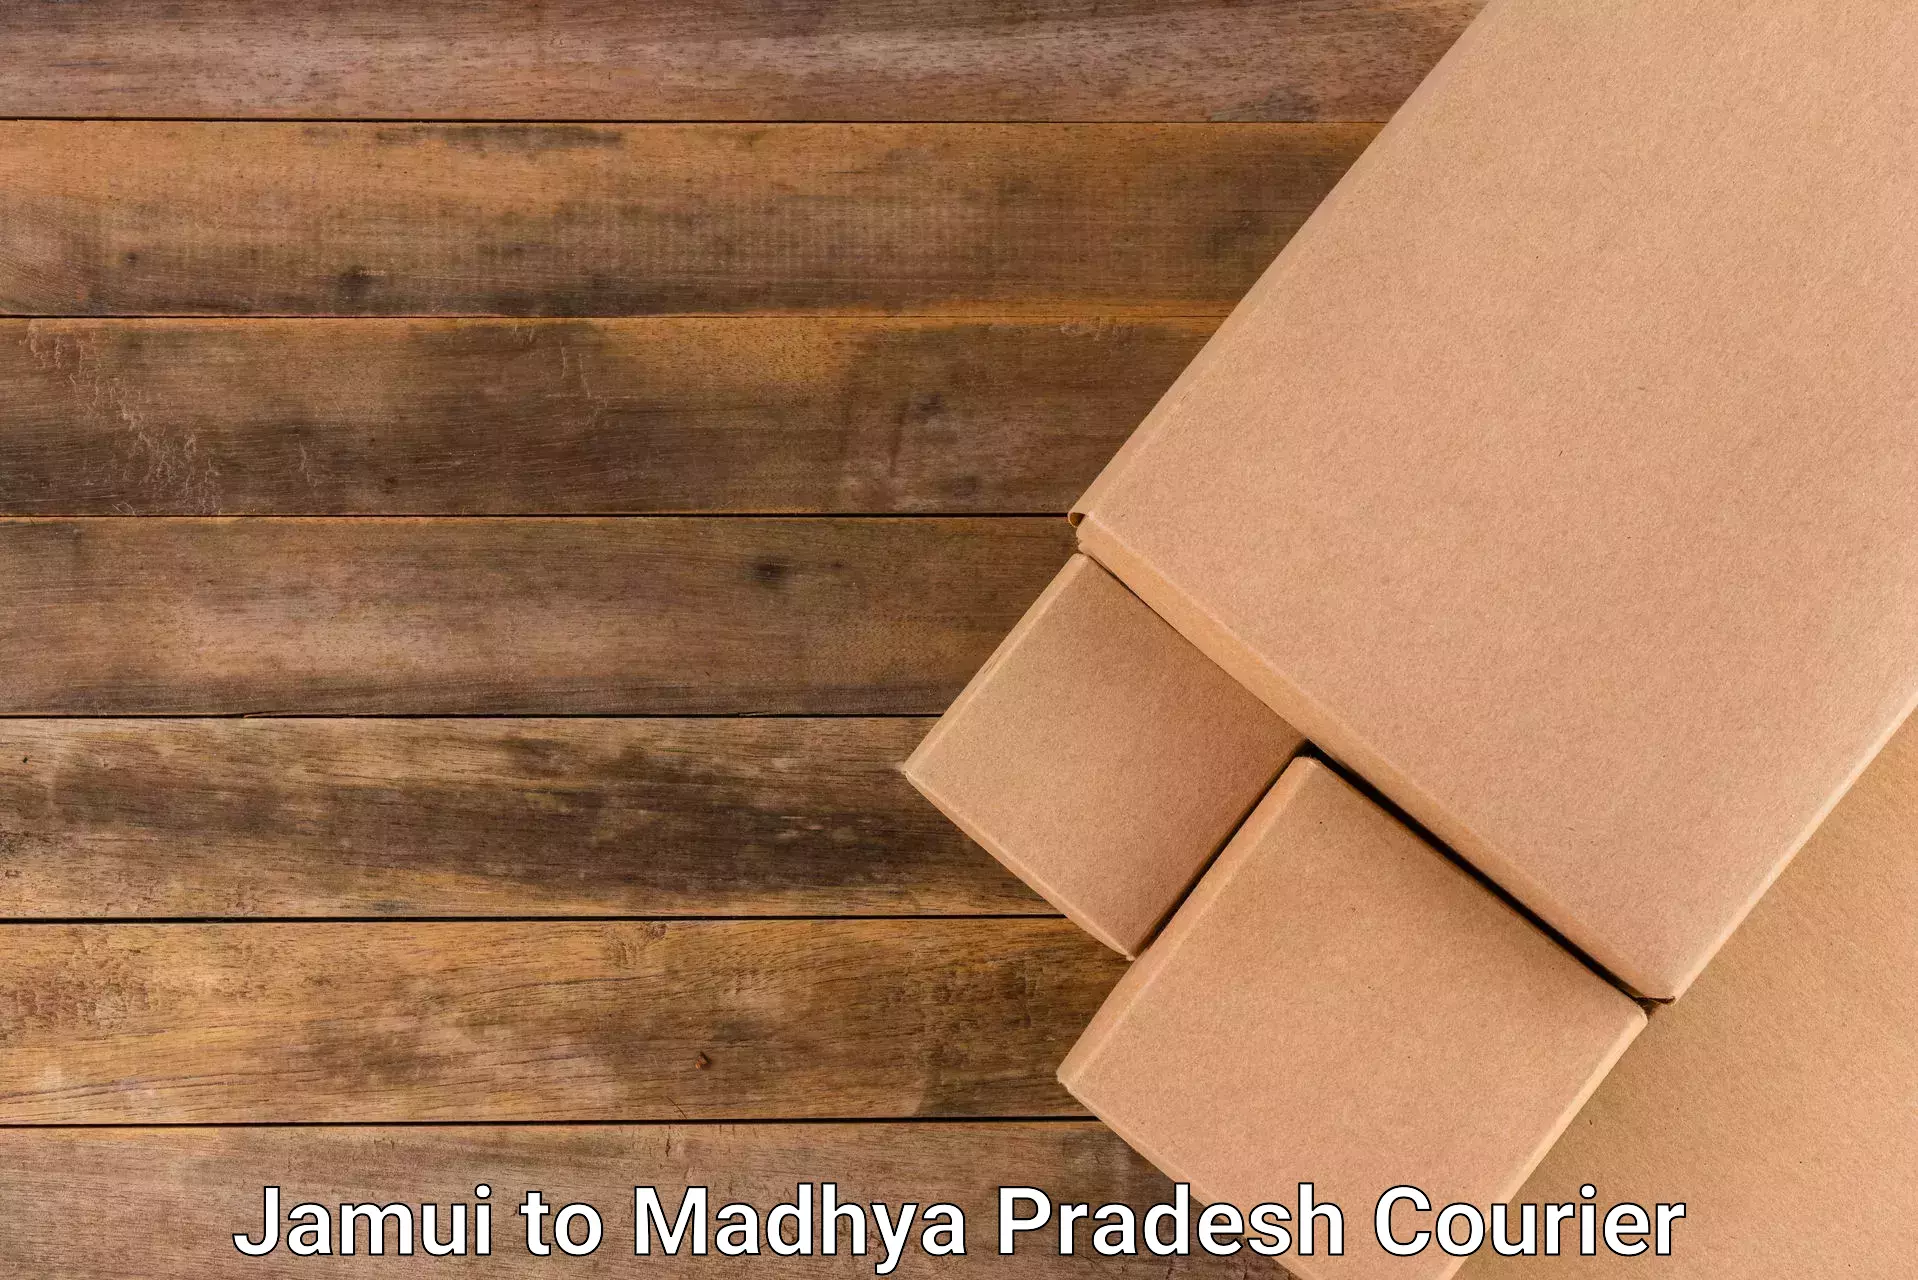 Fragile item shipping Jamui to Madhya Pradesh